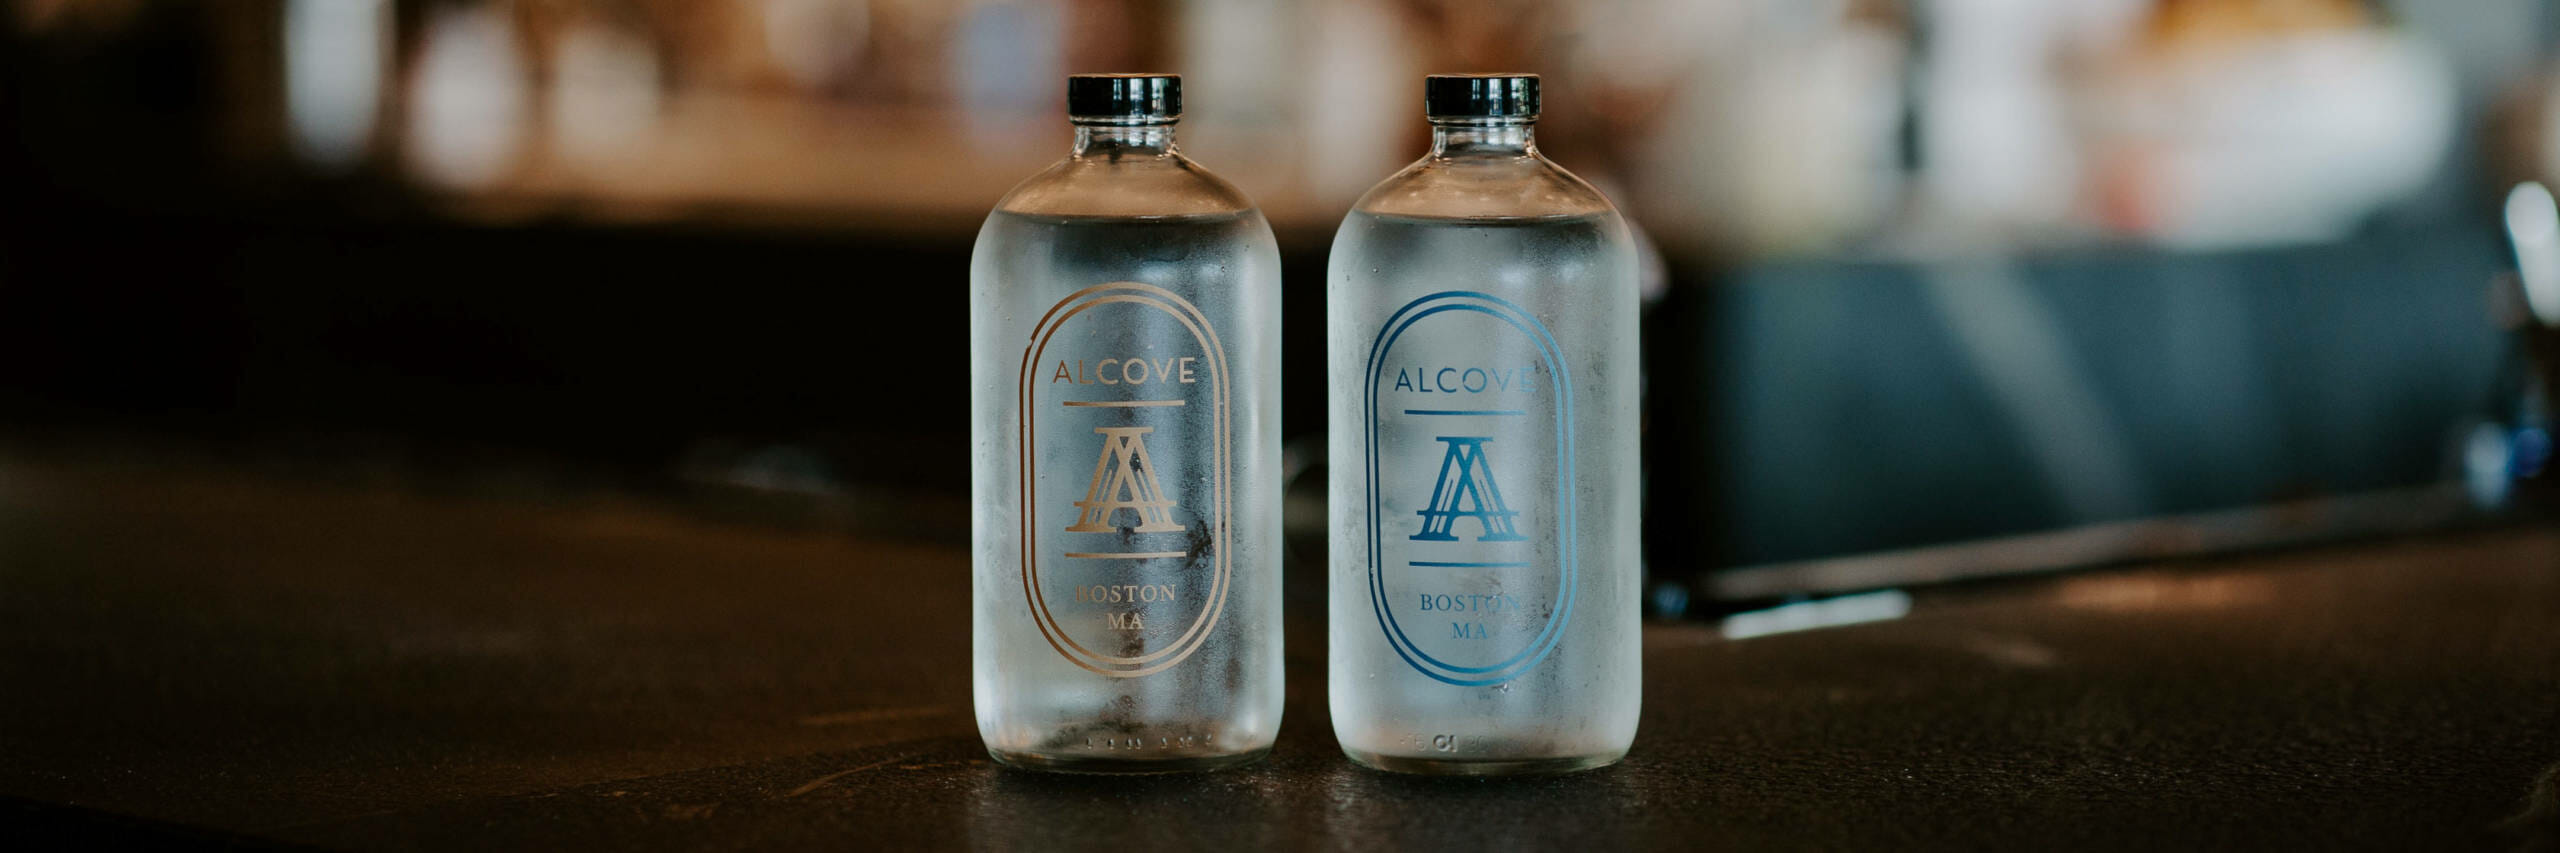 Alcove custom branded bottle